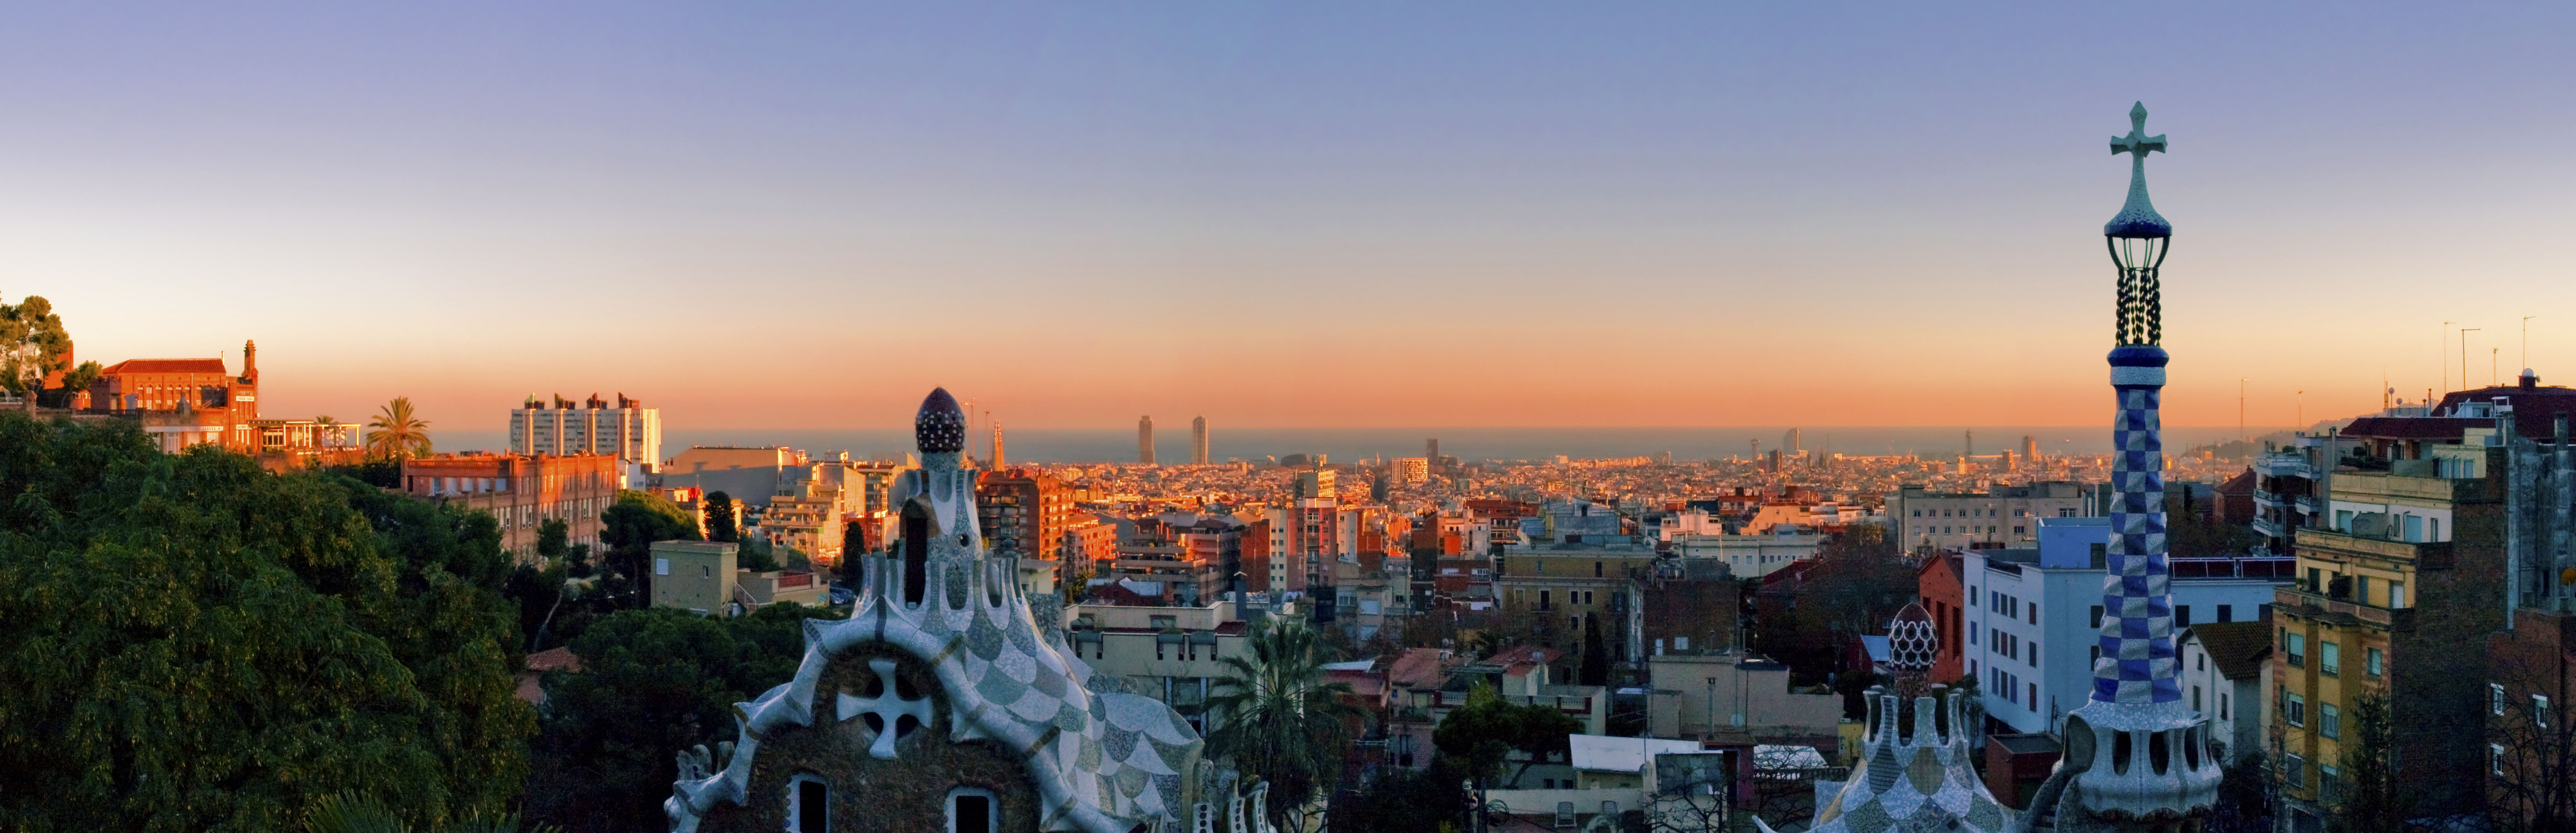 9 Barcelona travel tips for affordable luxury travel | LiveShareTravel